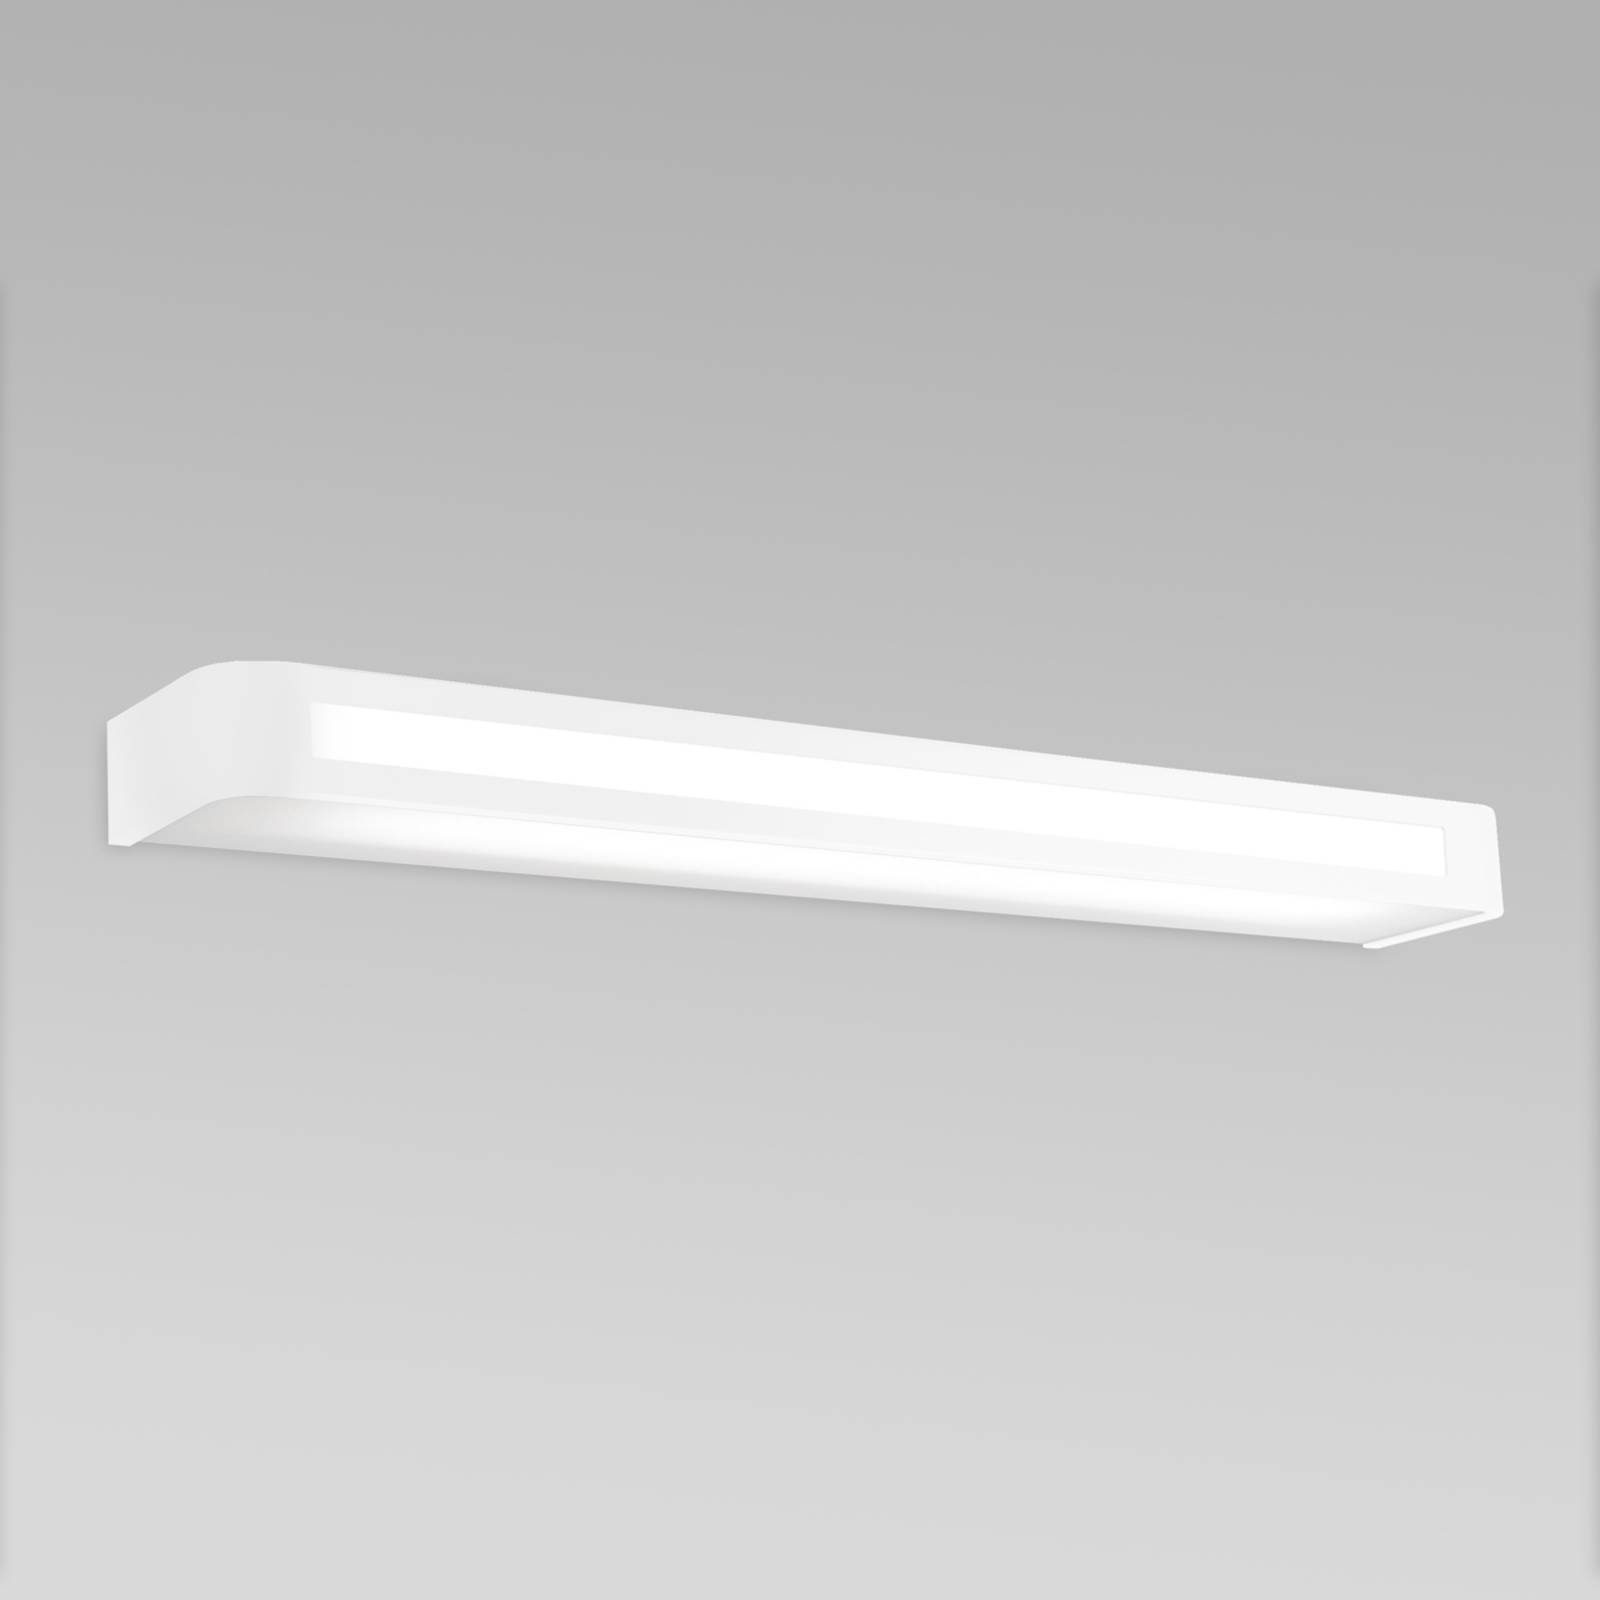 Tijdloze LED wandlamp Arcos, IP20 60 cm, wit